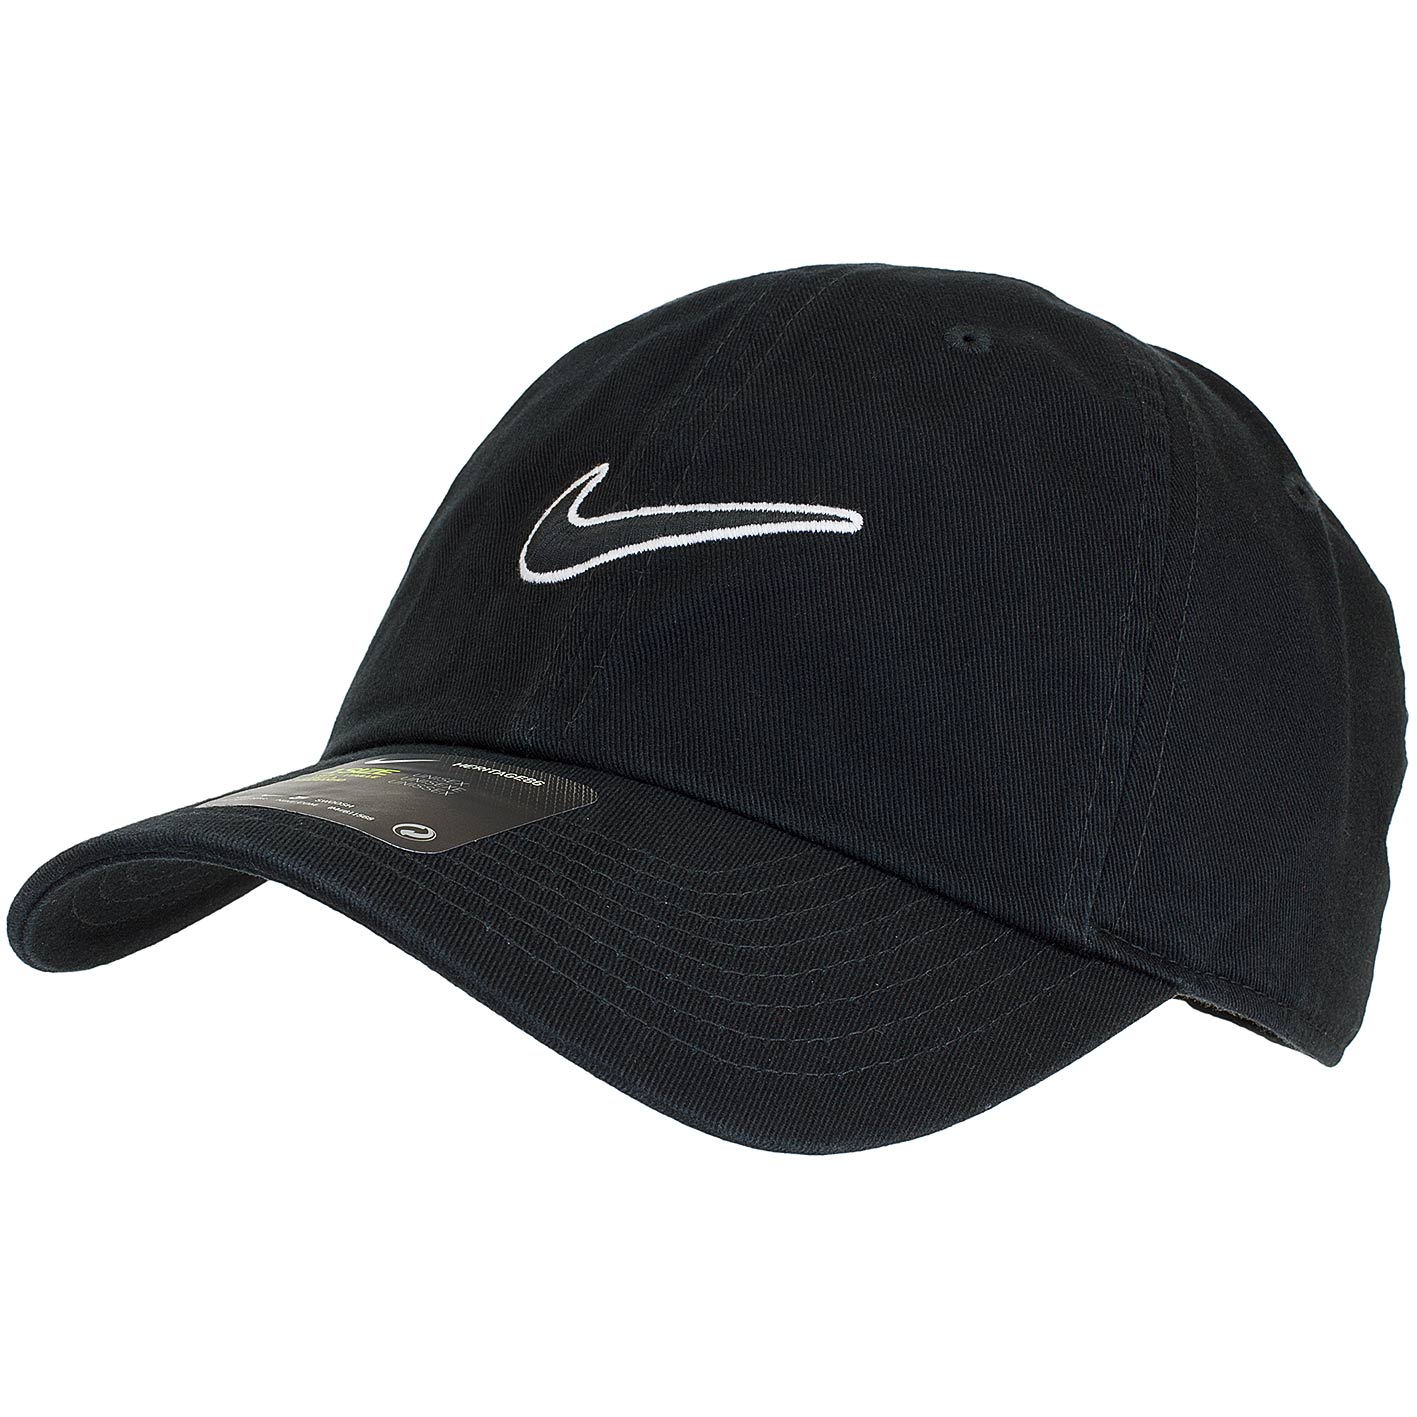 ☆ Nike Snapback Cap Heritage 86 Essential schwarz/schwarz - hier bestellen!